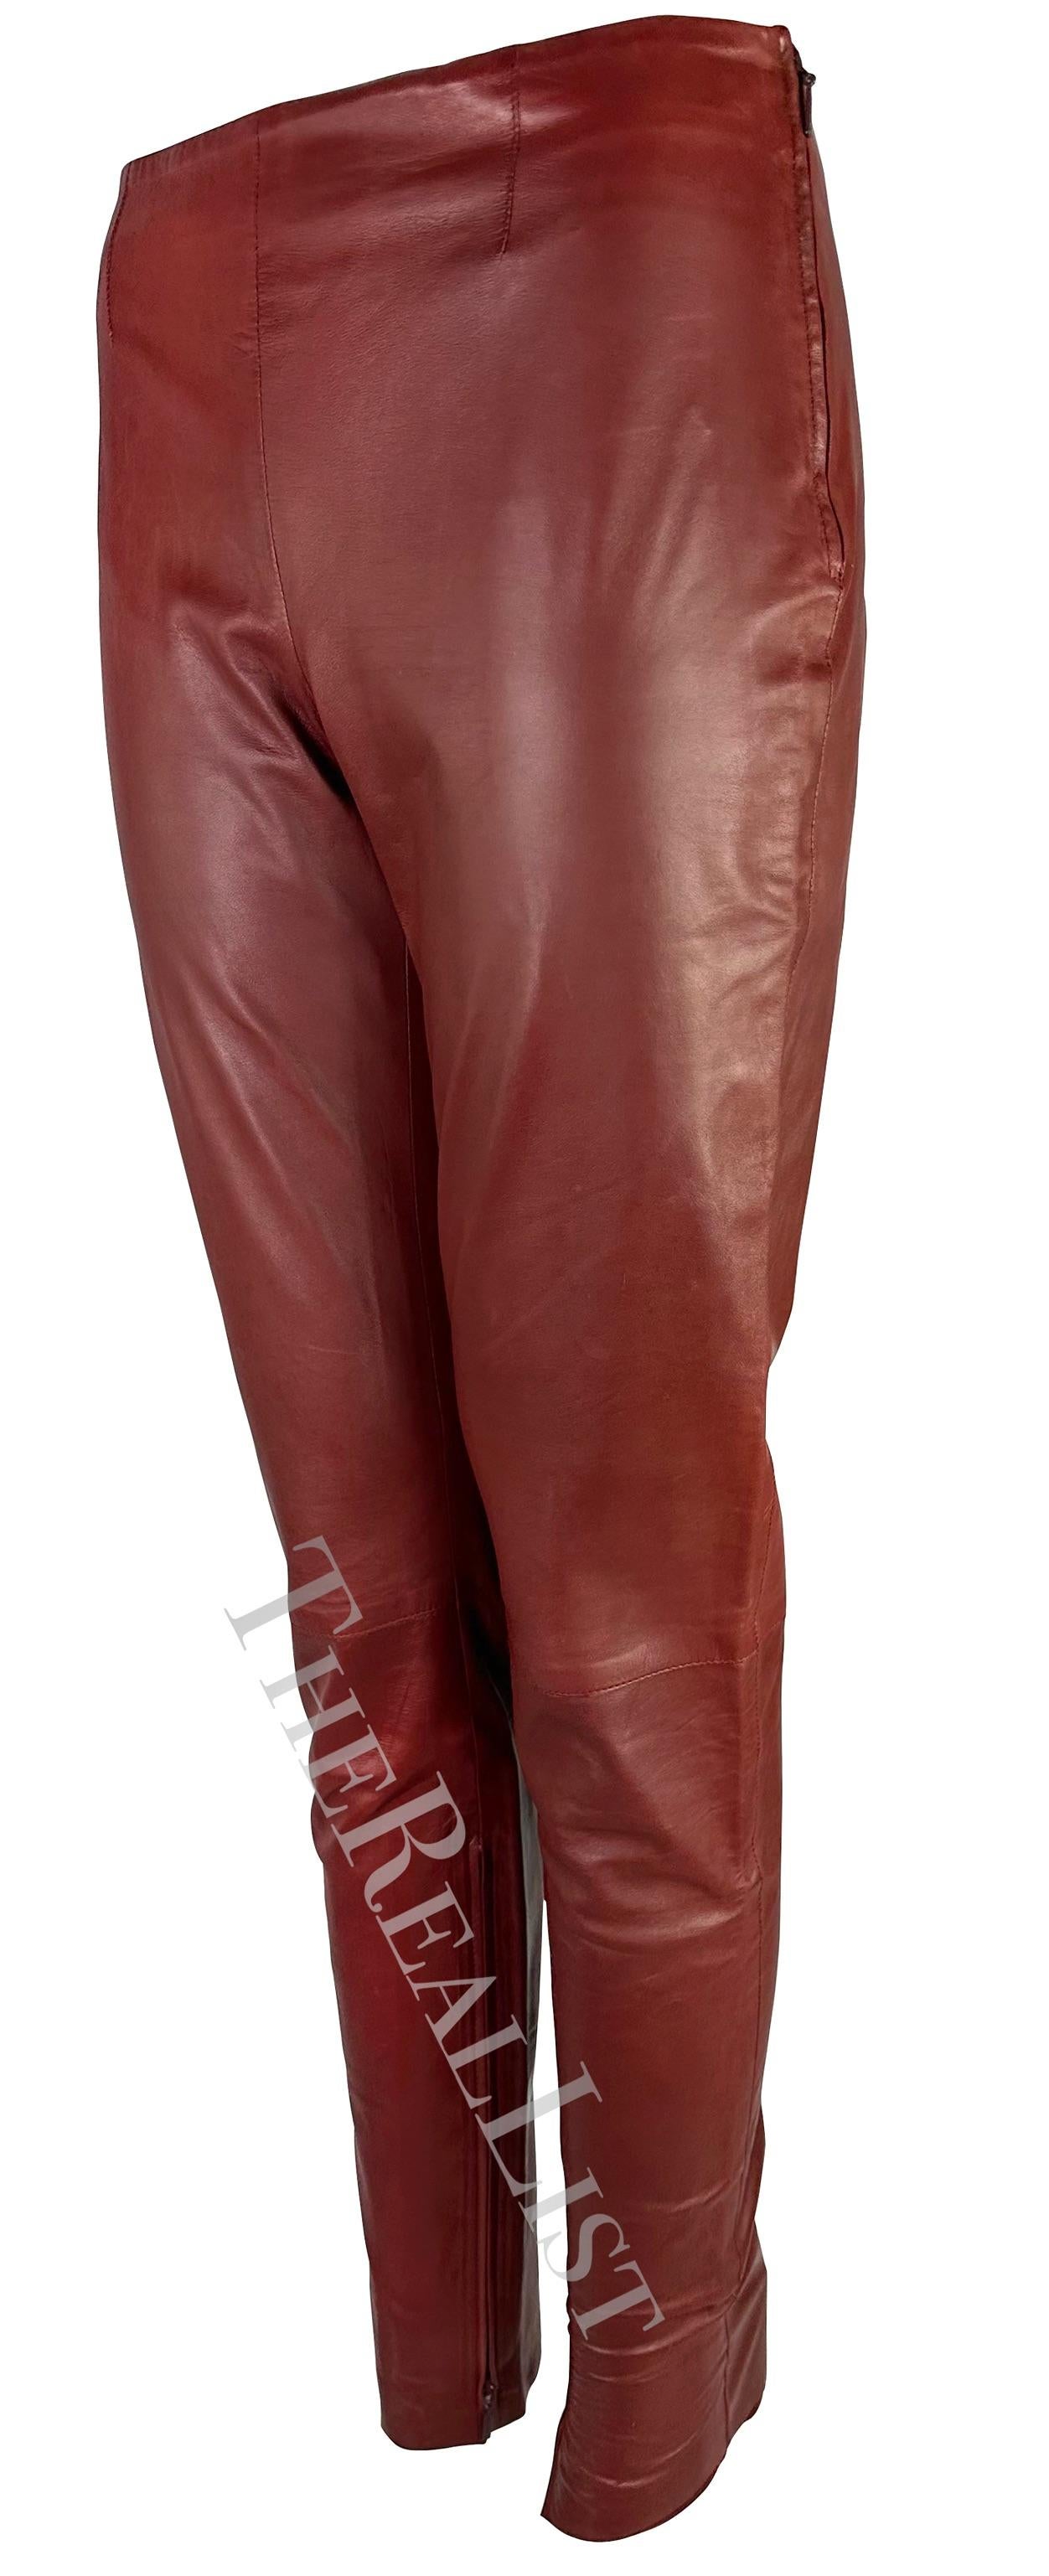 Ich präsentiere eine fabelhafte rote Gucci-Lederhose, entworfen von Tom Ford. Diese Hose aus den frühen 2000er Jahren ist komplett aus üppigem, tiefrotem Leder gefertigt. Mit einer schmeichelhaften hohen Taille und einem schlanken, spitz zulaufenden